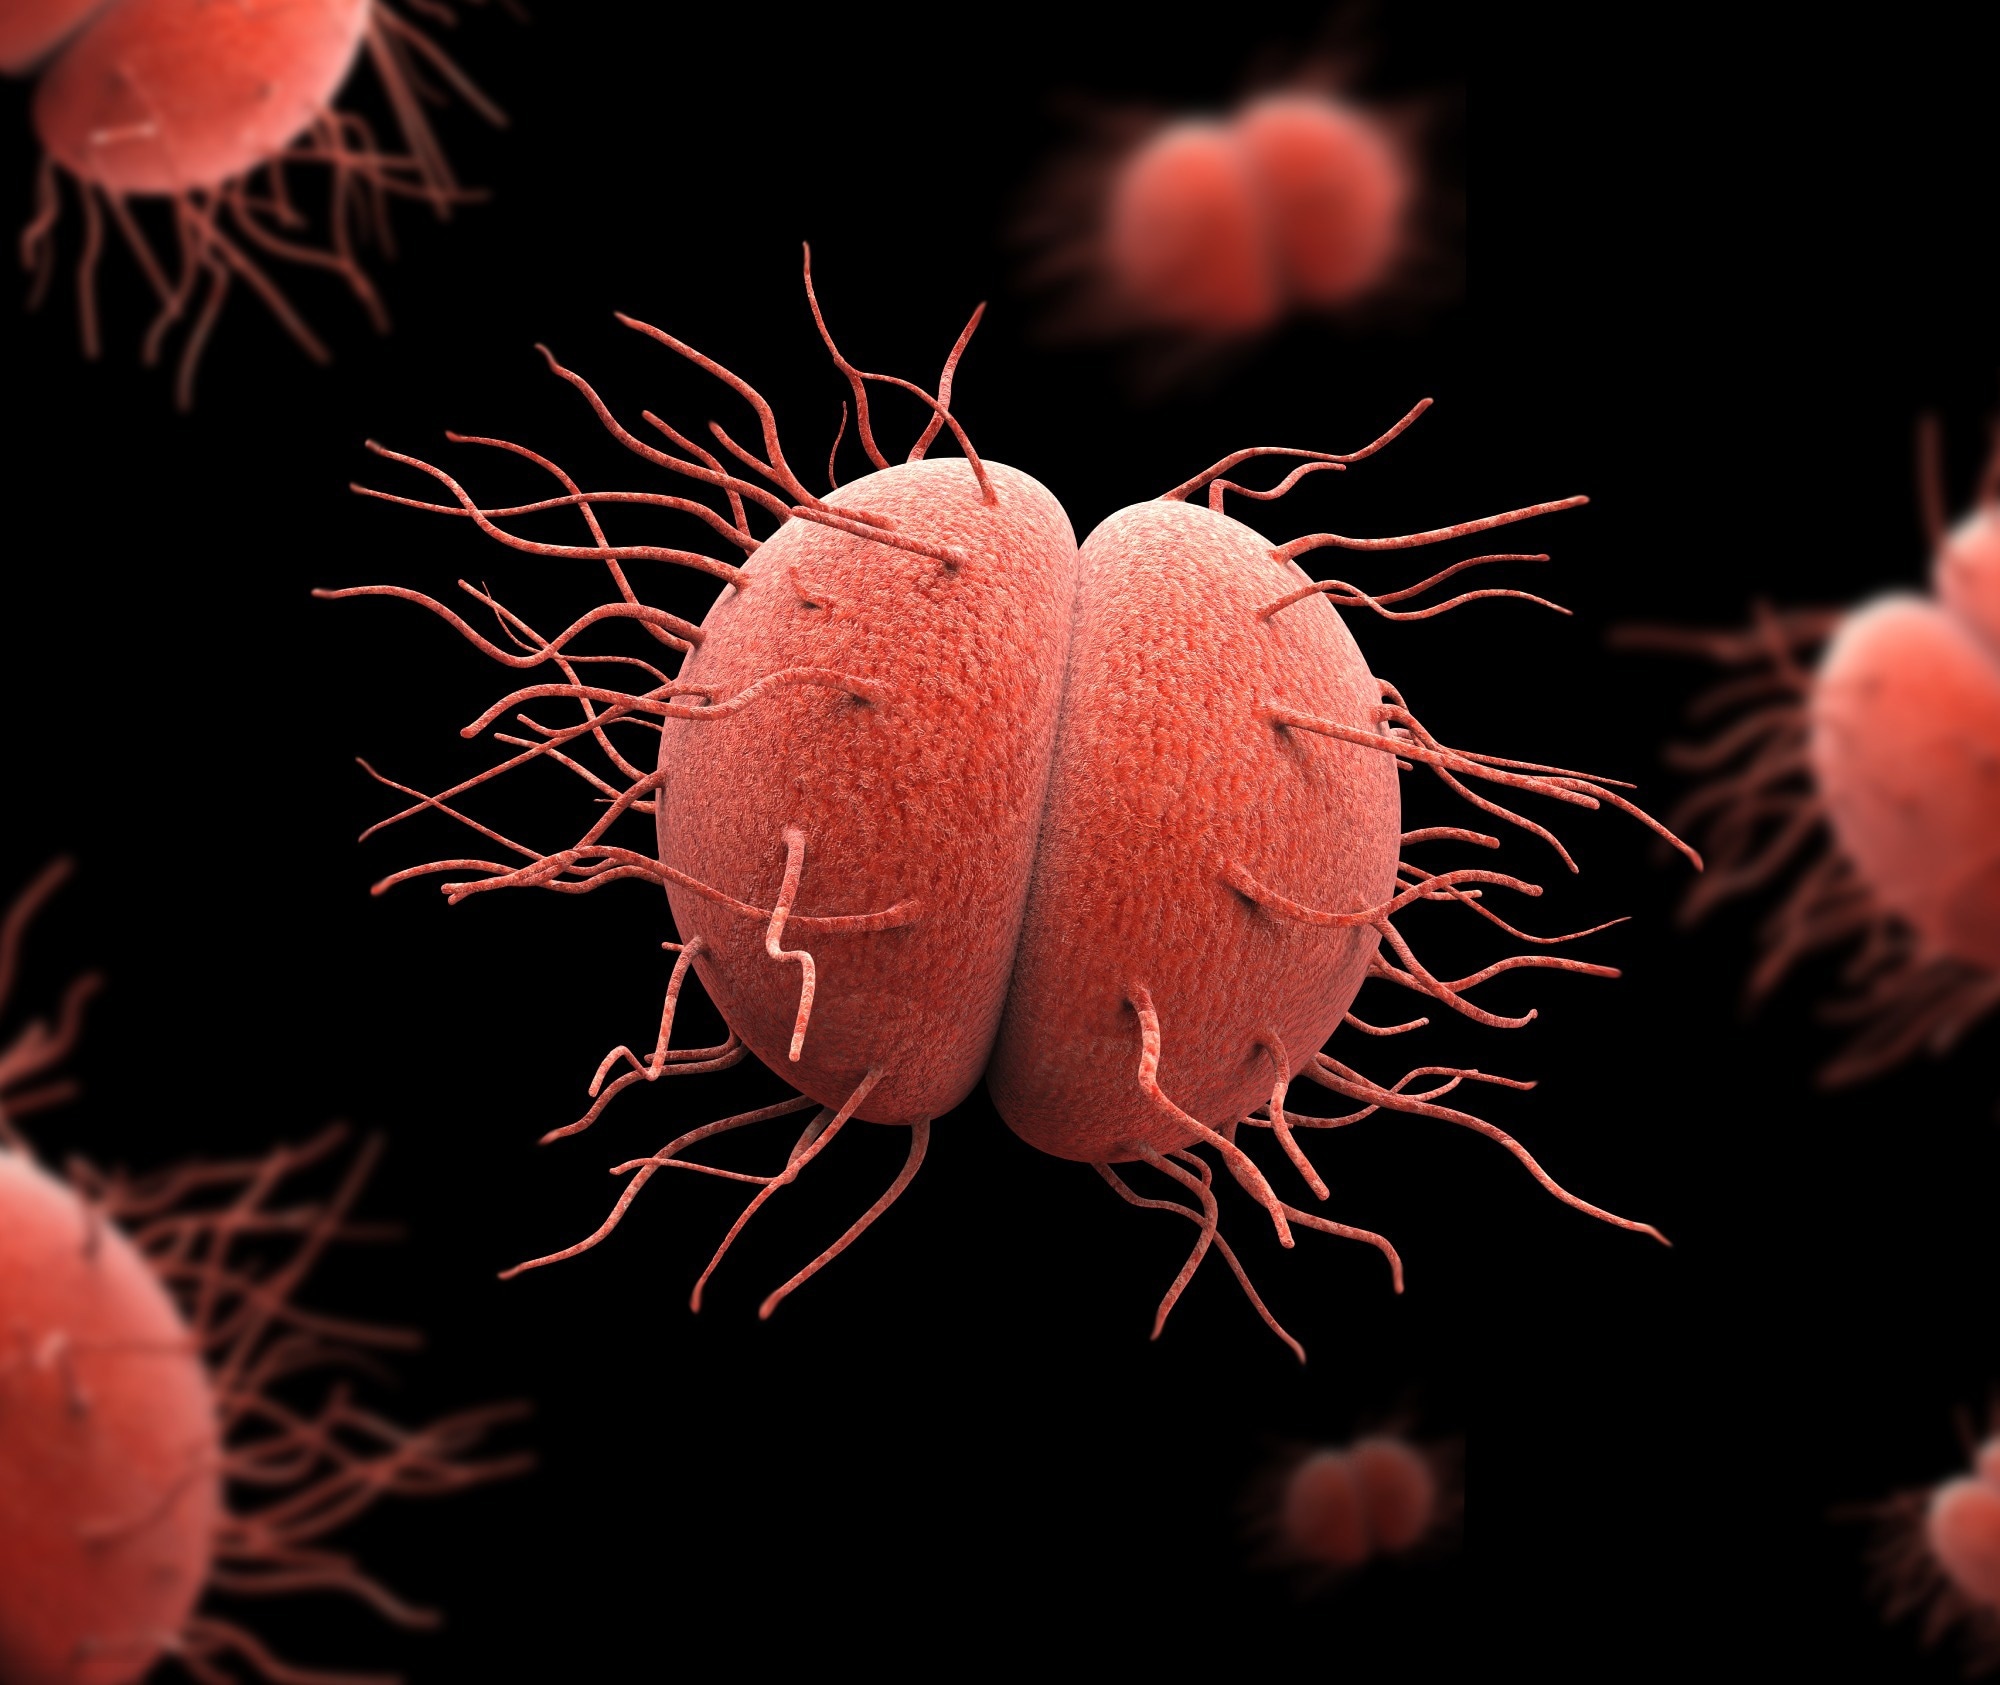 Bacteria Neisseria gonorrhea. Image Credit: Giovanni Cancemi / Shutterstock